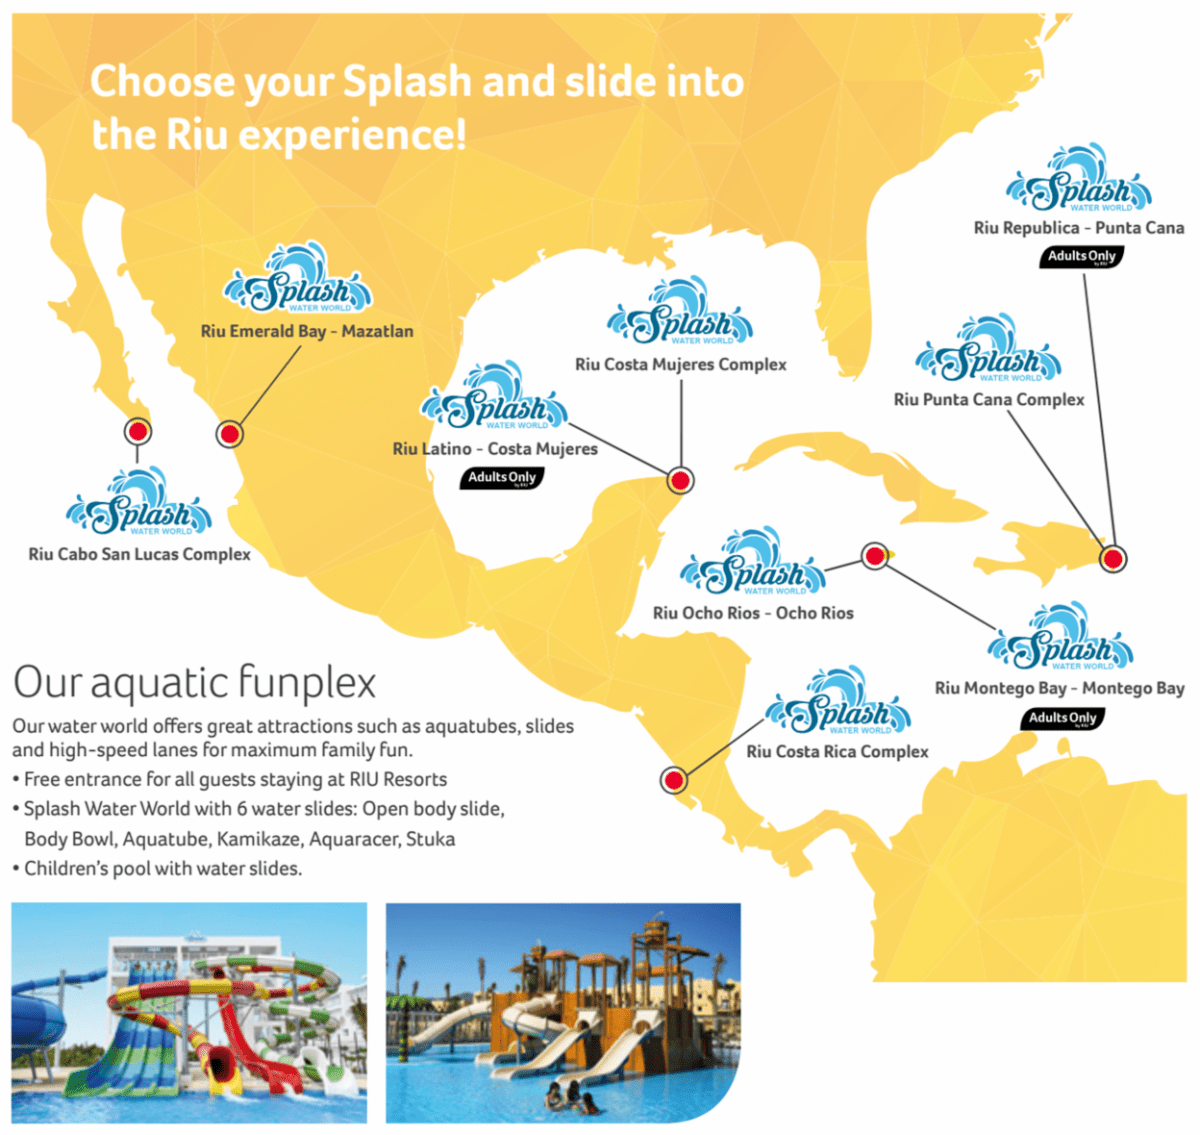 Travel agent for Riu resorts showcasing Splash Water World. 